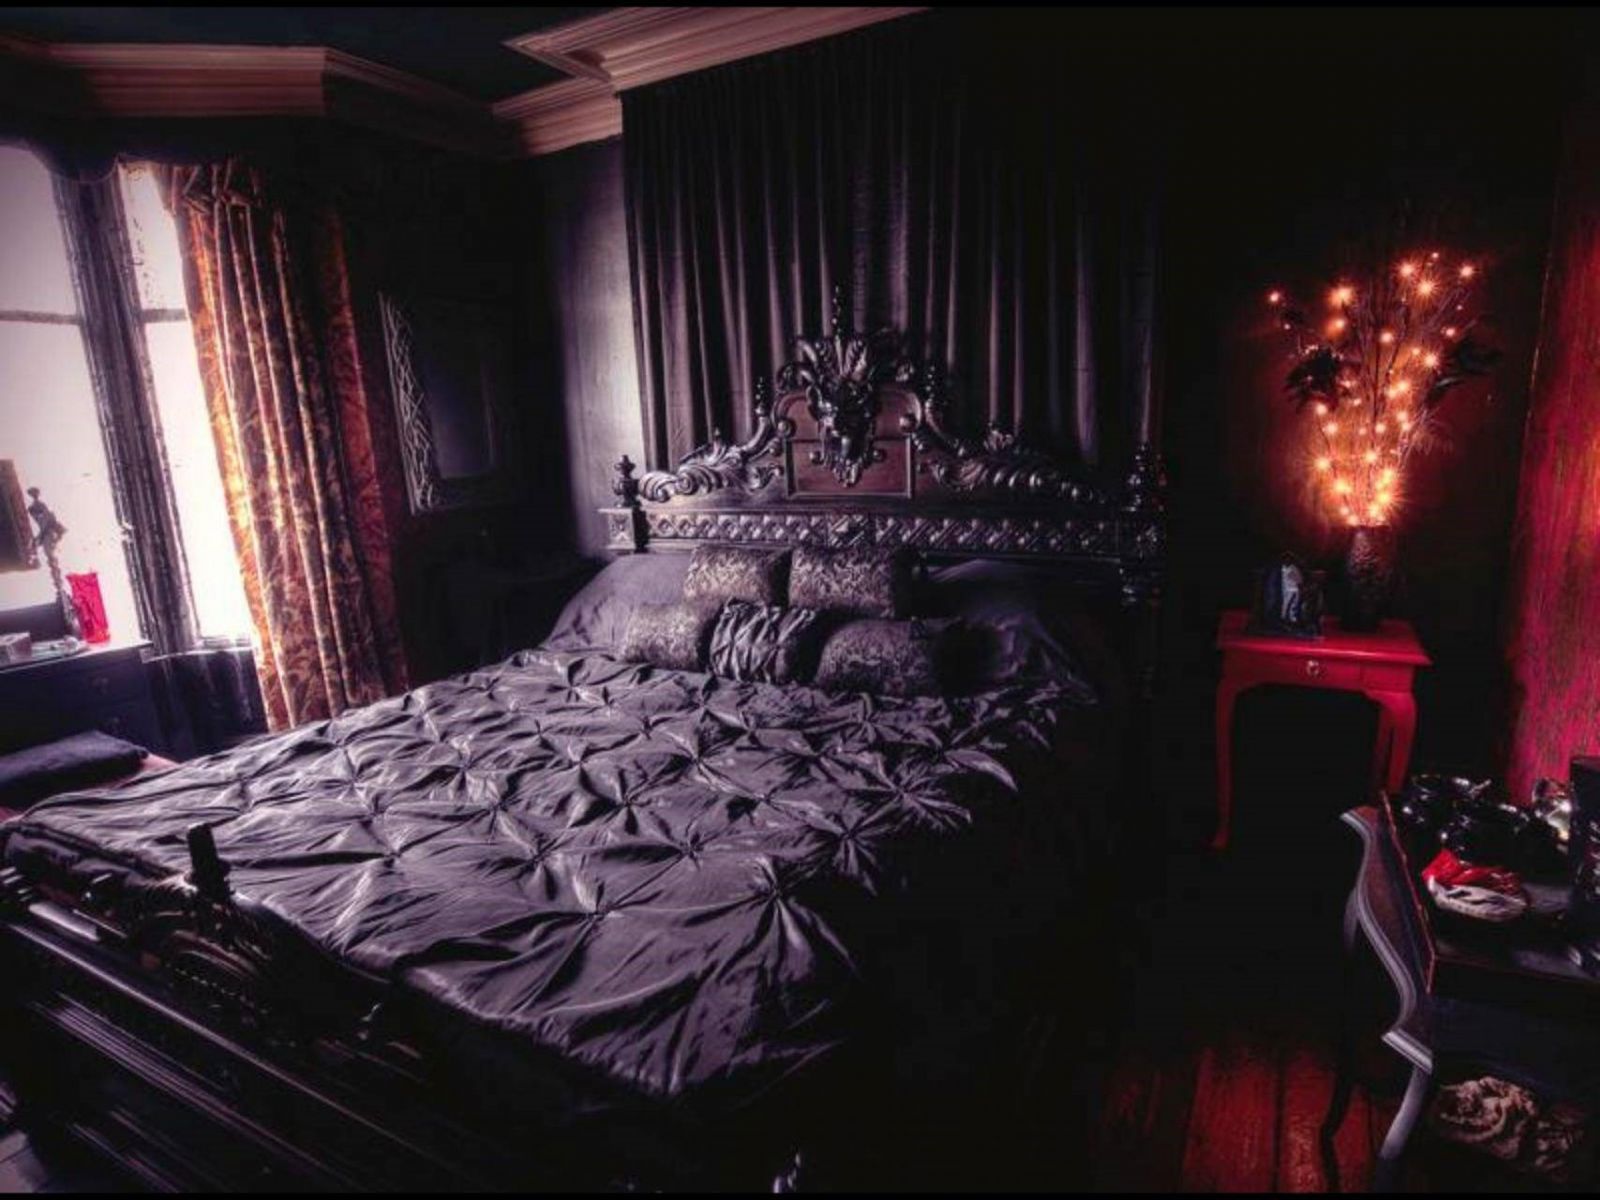 Khung giường được chạm khắc tỉ mỉ sẽ là một điểm nhấn trong phòng ngủ theo phong cách Gothic